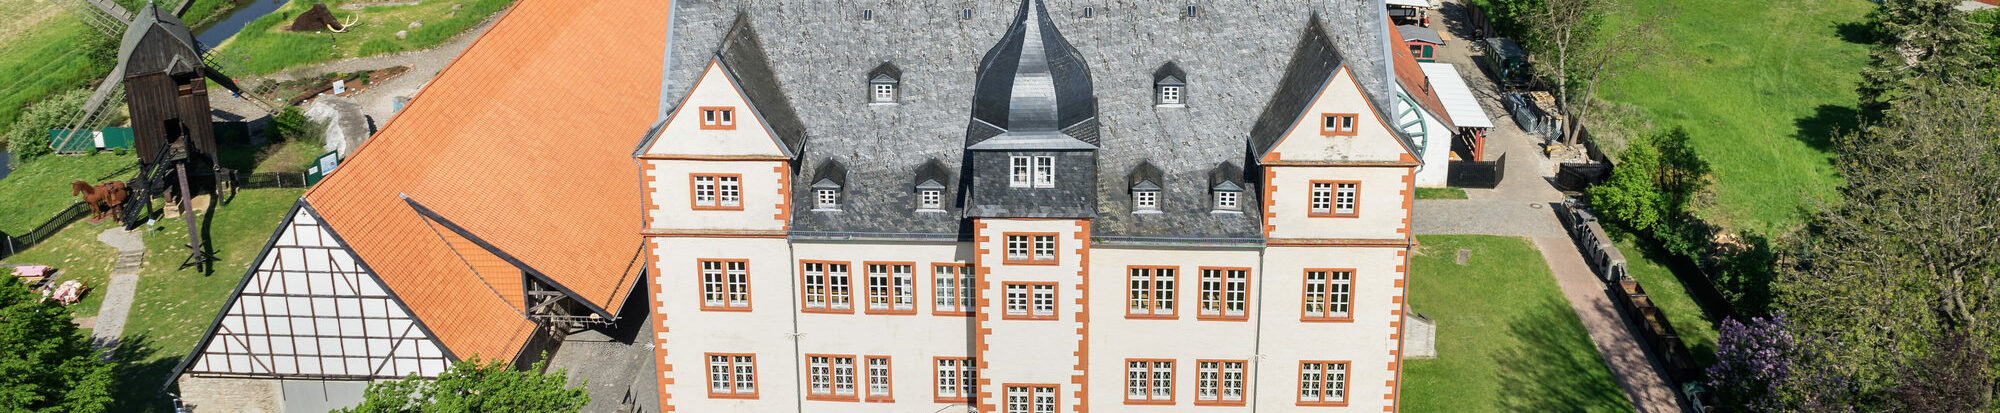 Schloss Salder von oben fotografiert.